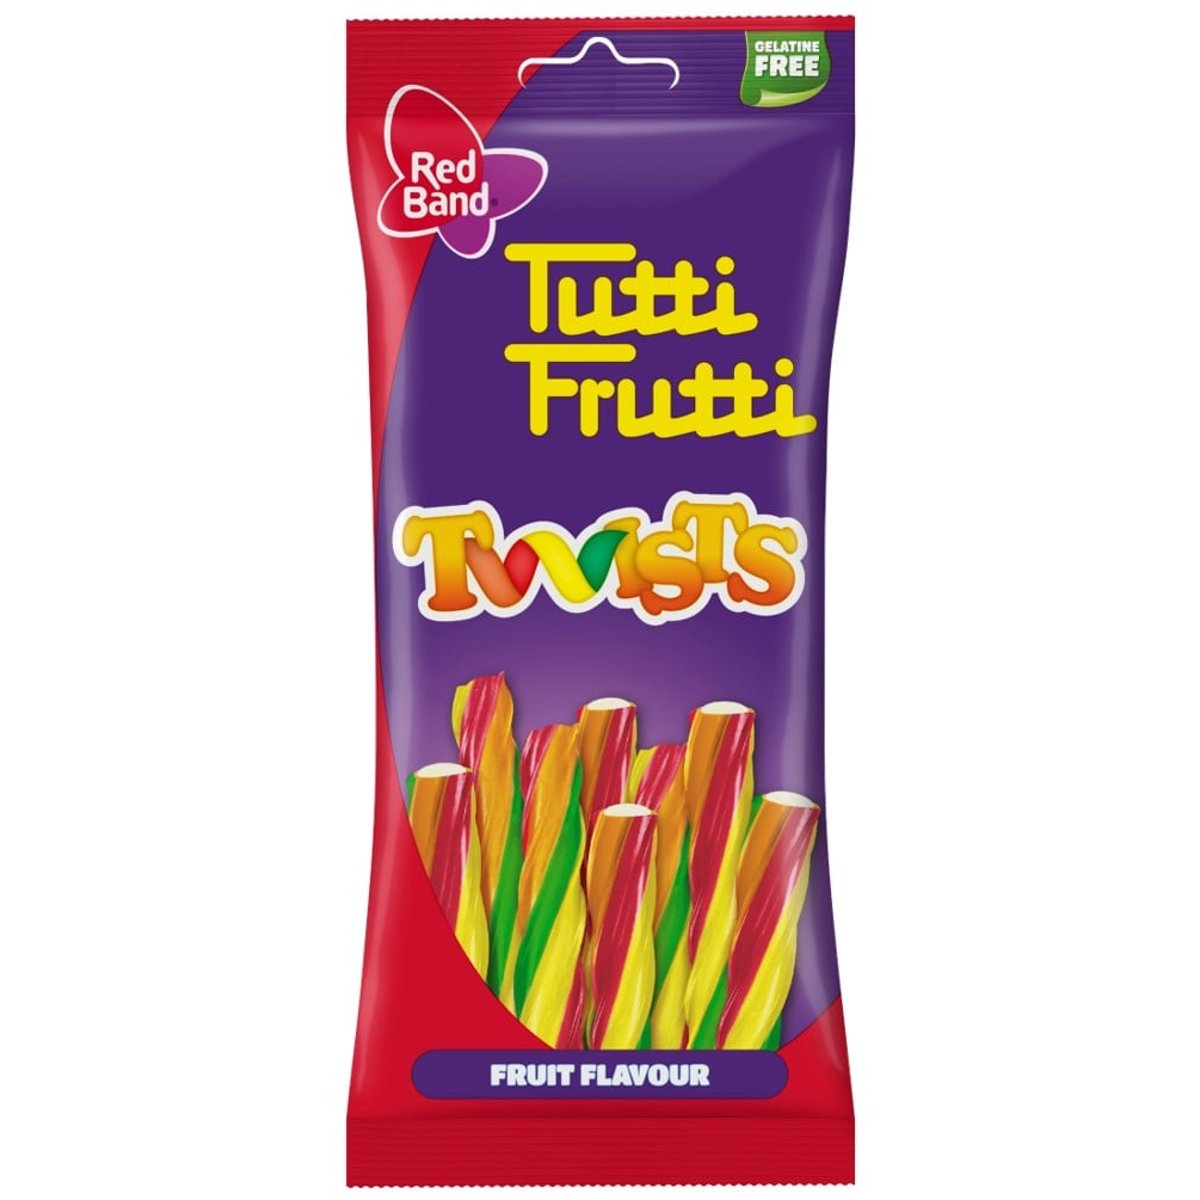 Red Band Tutti Frutti Twists želé pendreky